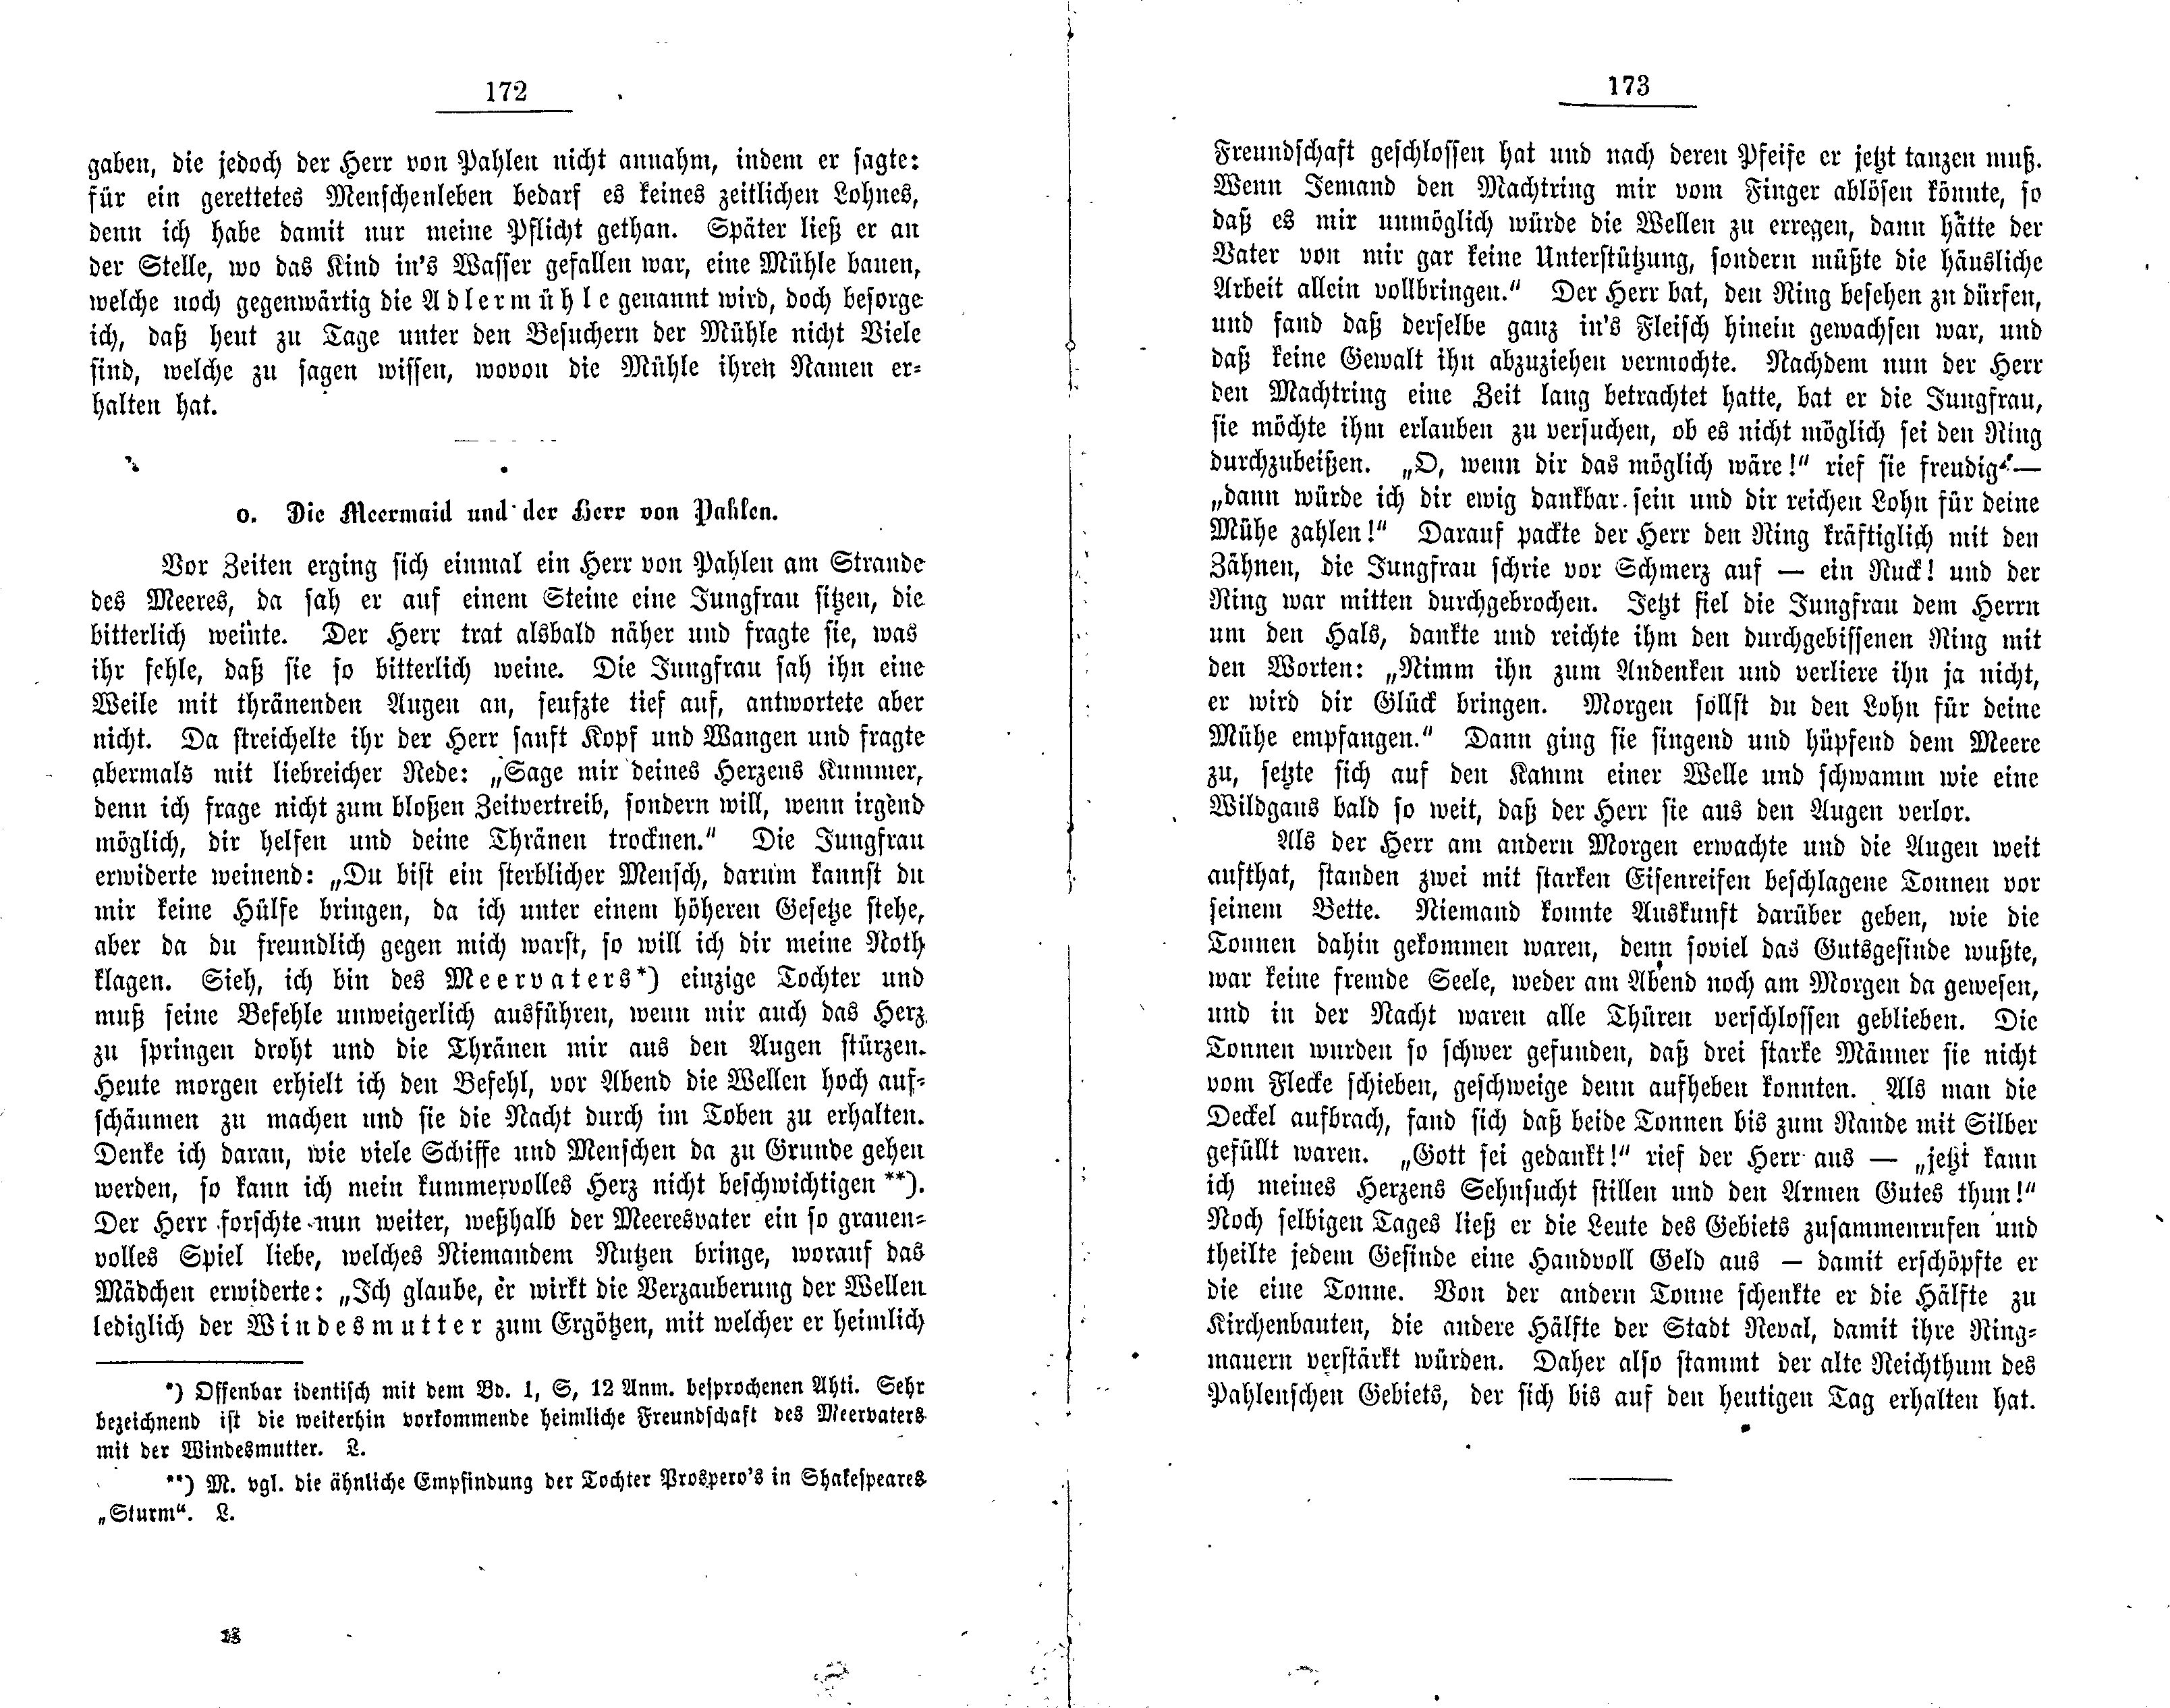 Die Meermaid und der Herr von Pahlen (1881) | 1. (172-173) Main body of text